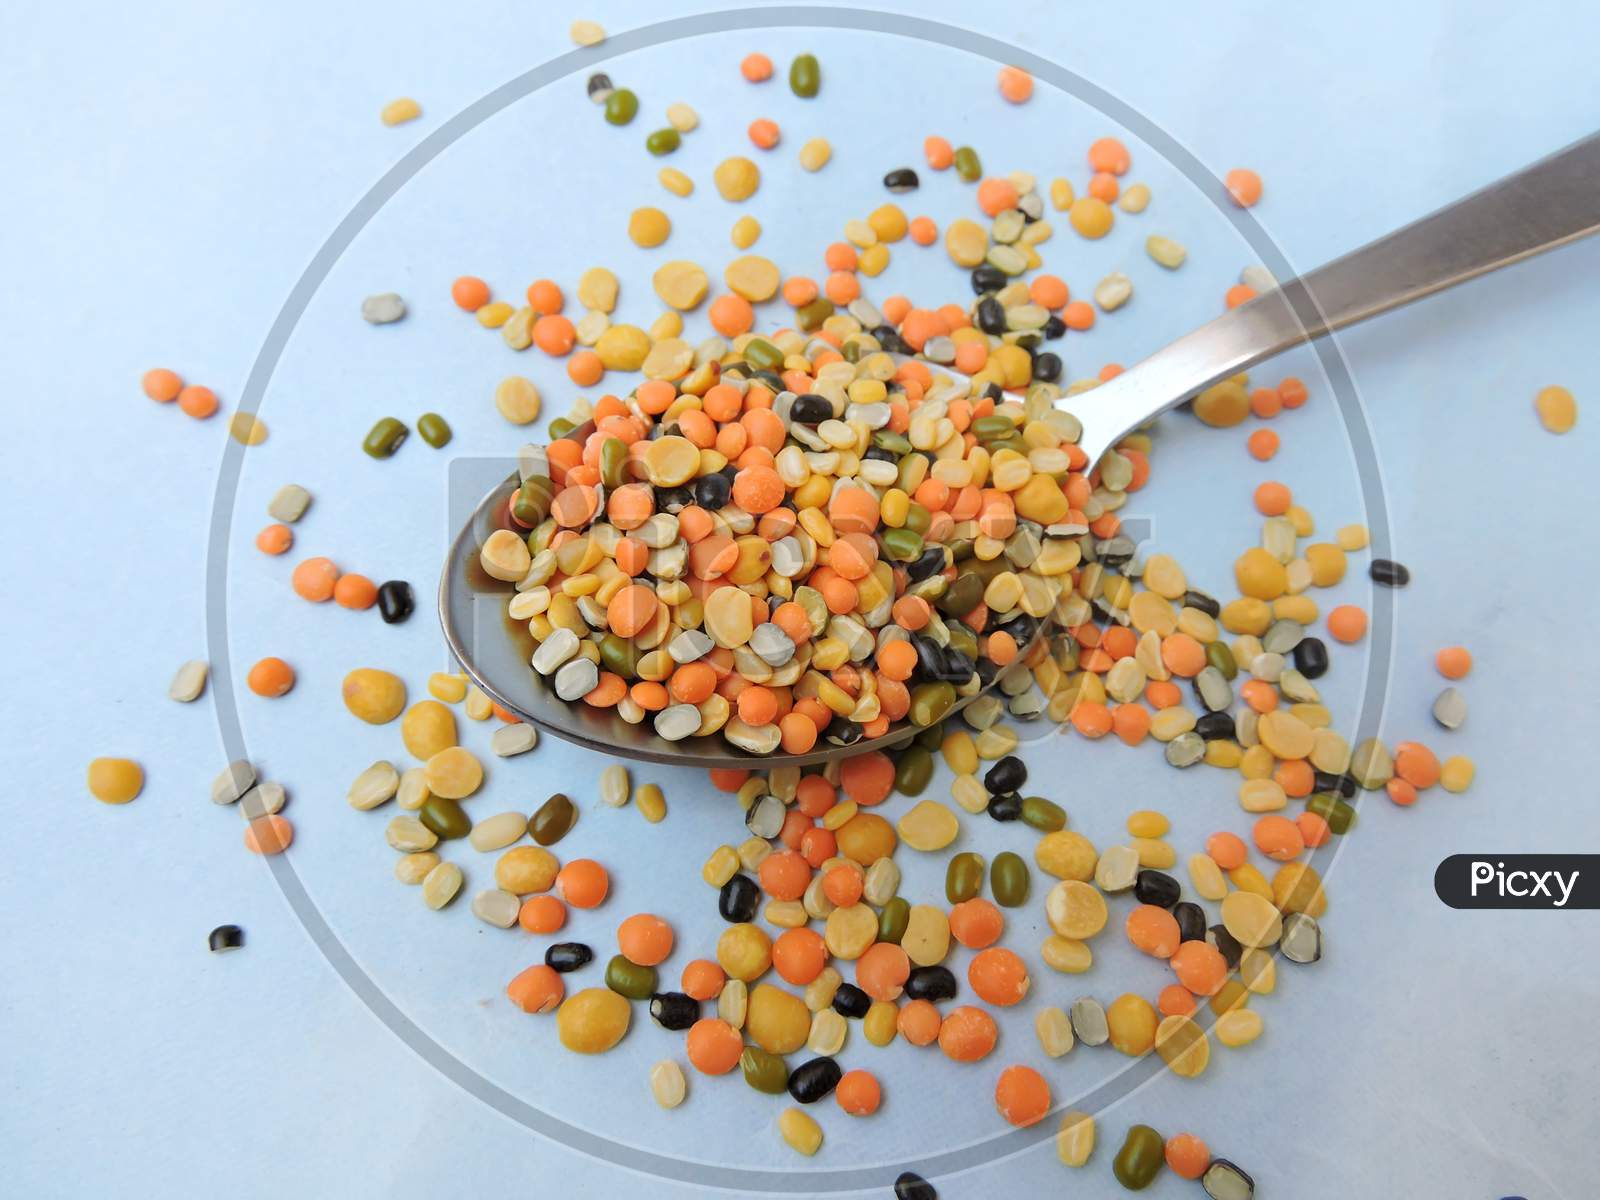 Mixed lentils